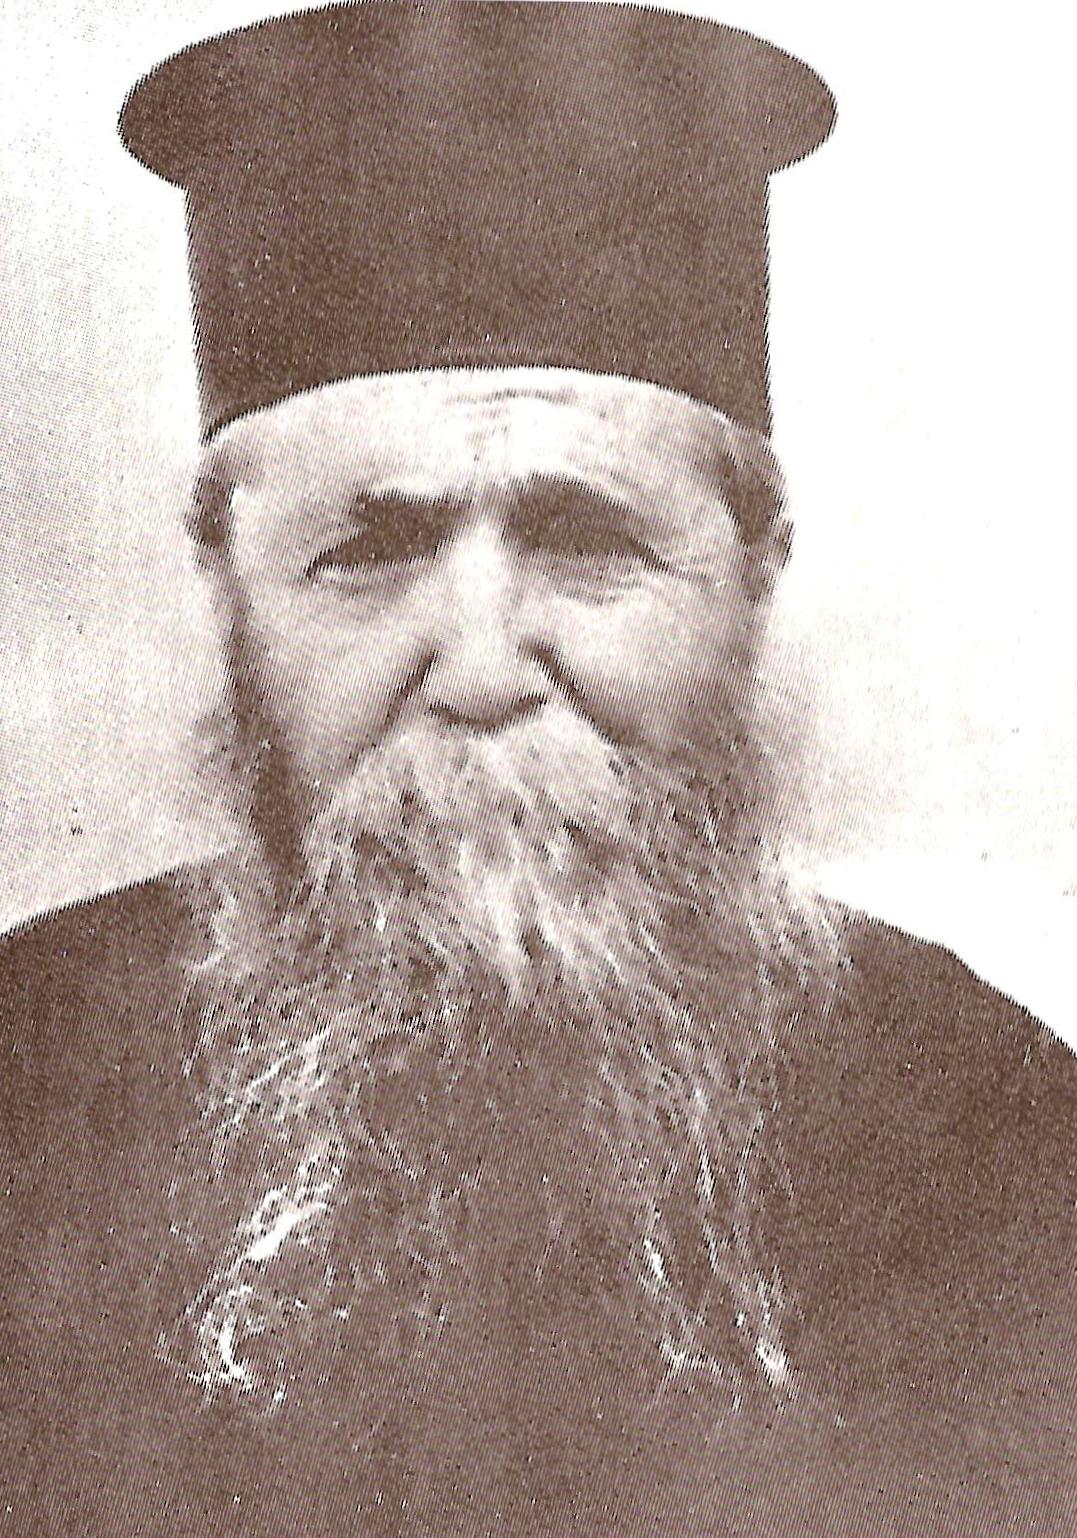 Elder Ieronymos of Aegina https://www.orthodox.net//ikons/ieronymos-elder-of-aegina.jpg